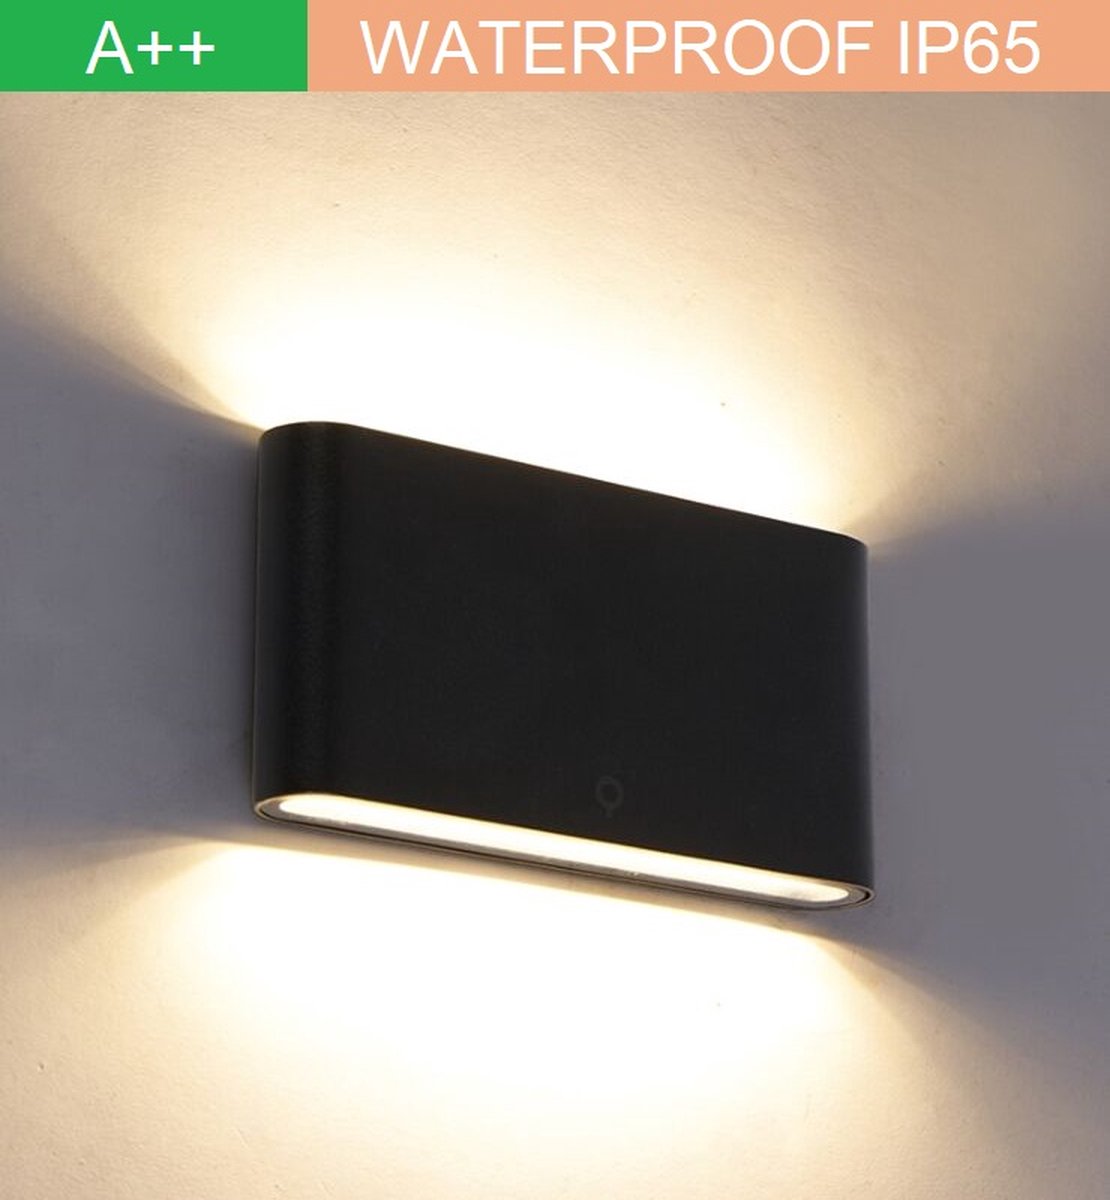 Lampen District - Wandlamp - Up and downlight - Zwart- Energiezuinig - 3000k warm licht - Aluminium behuizing - Anti corrosie - IP65 waterproof -Modern design 2022 -